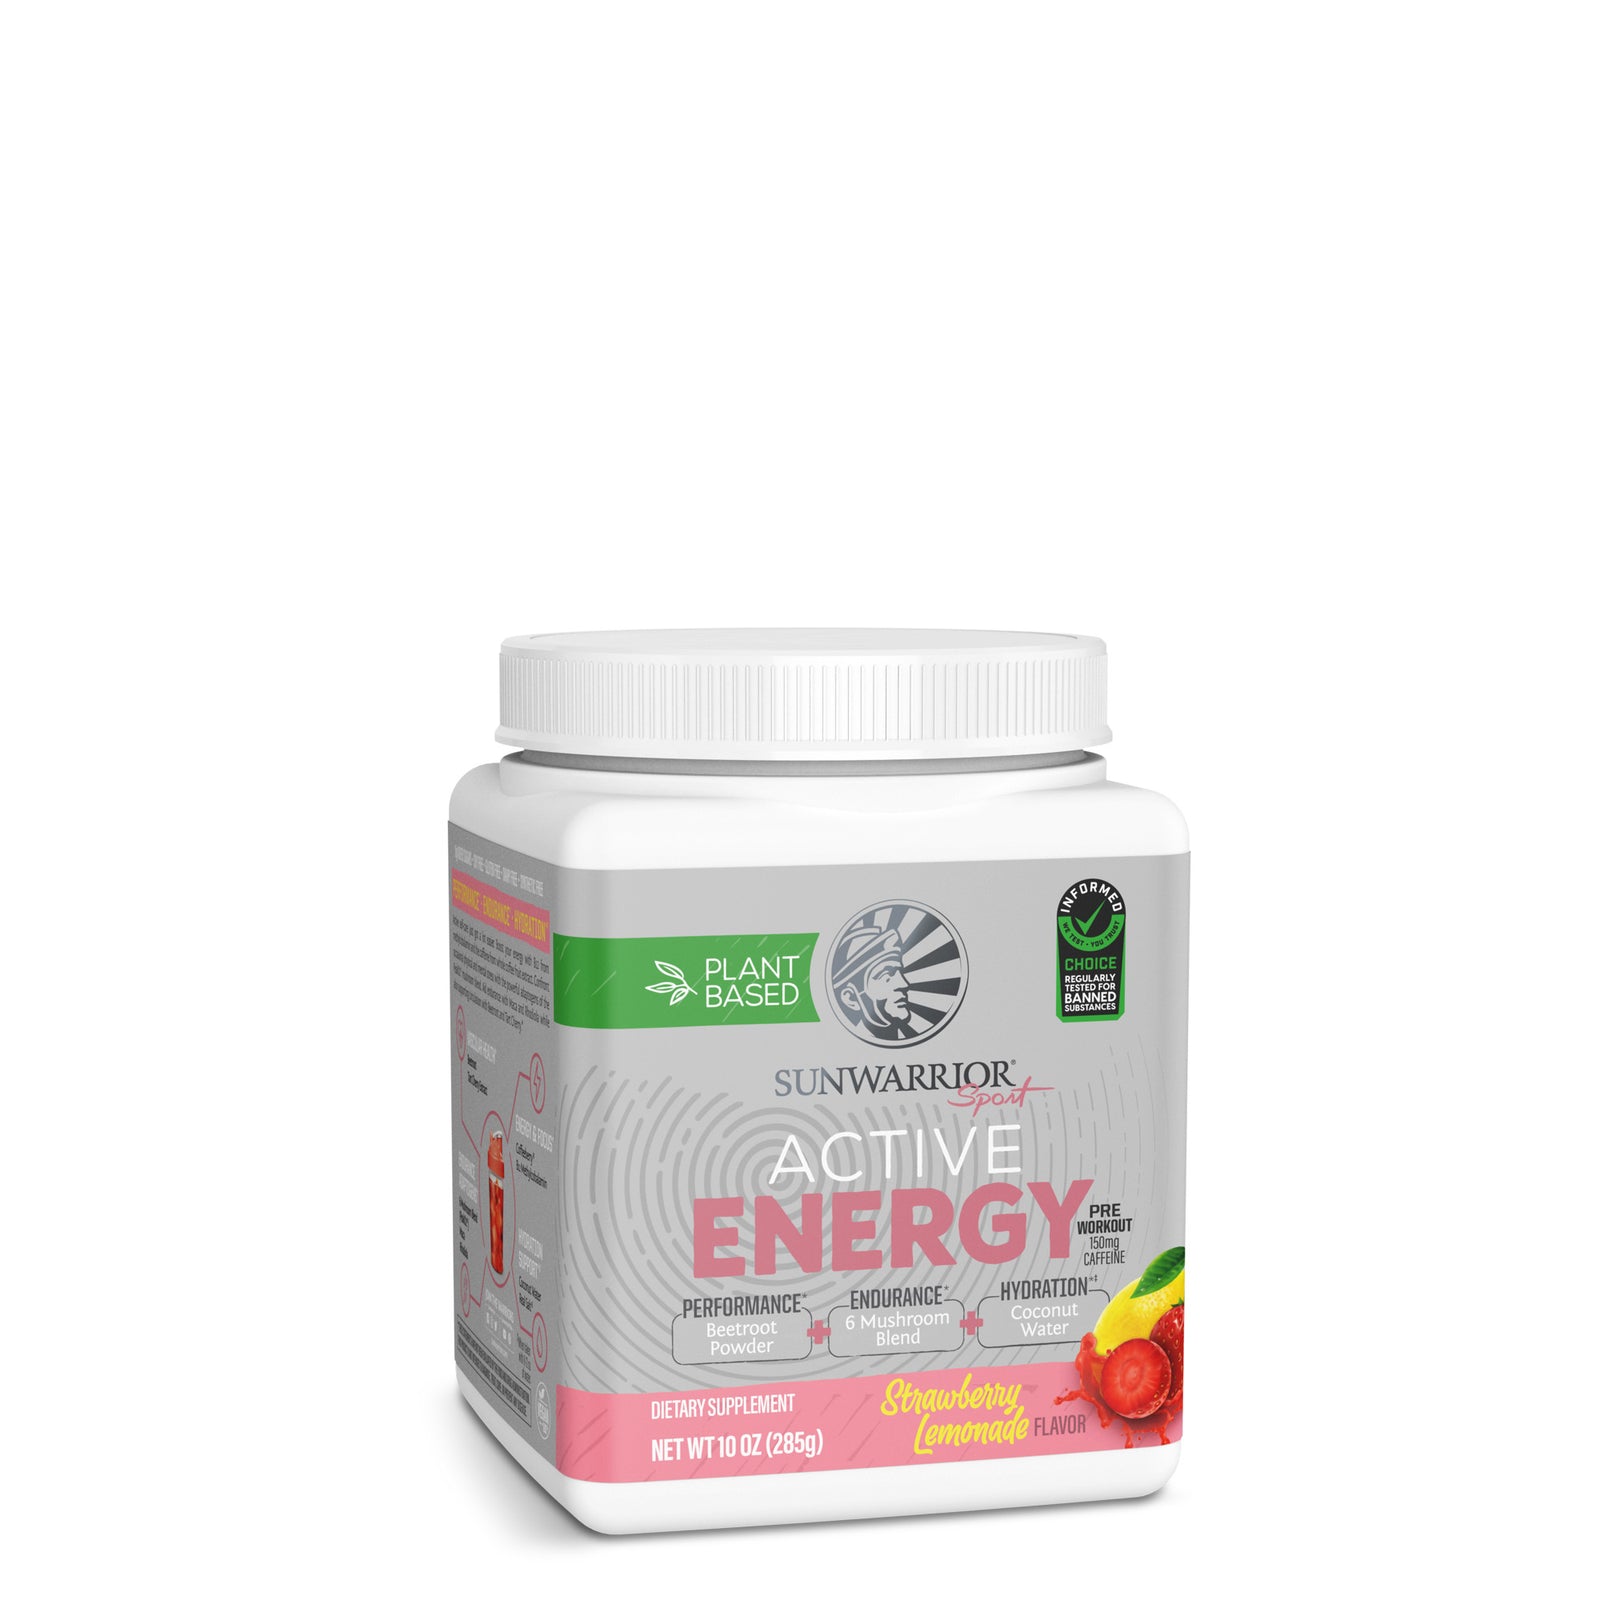 Active Energy Sunwarrior vị Strawberry Lemonade